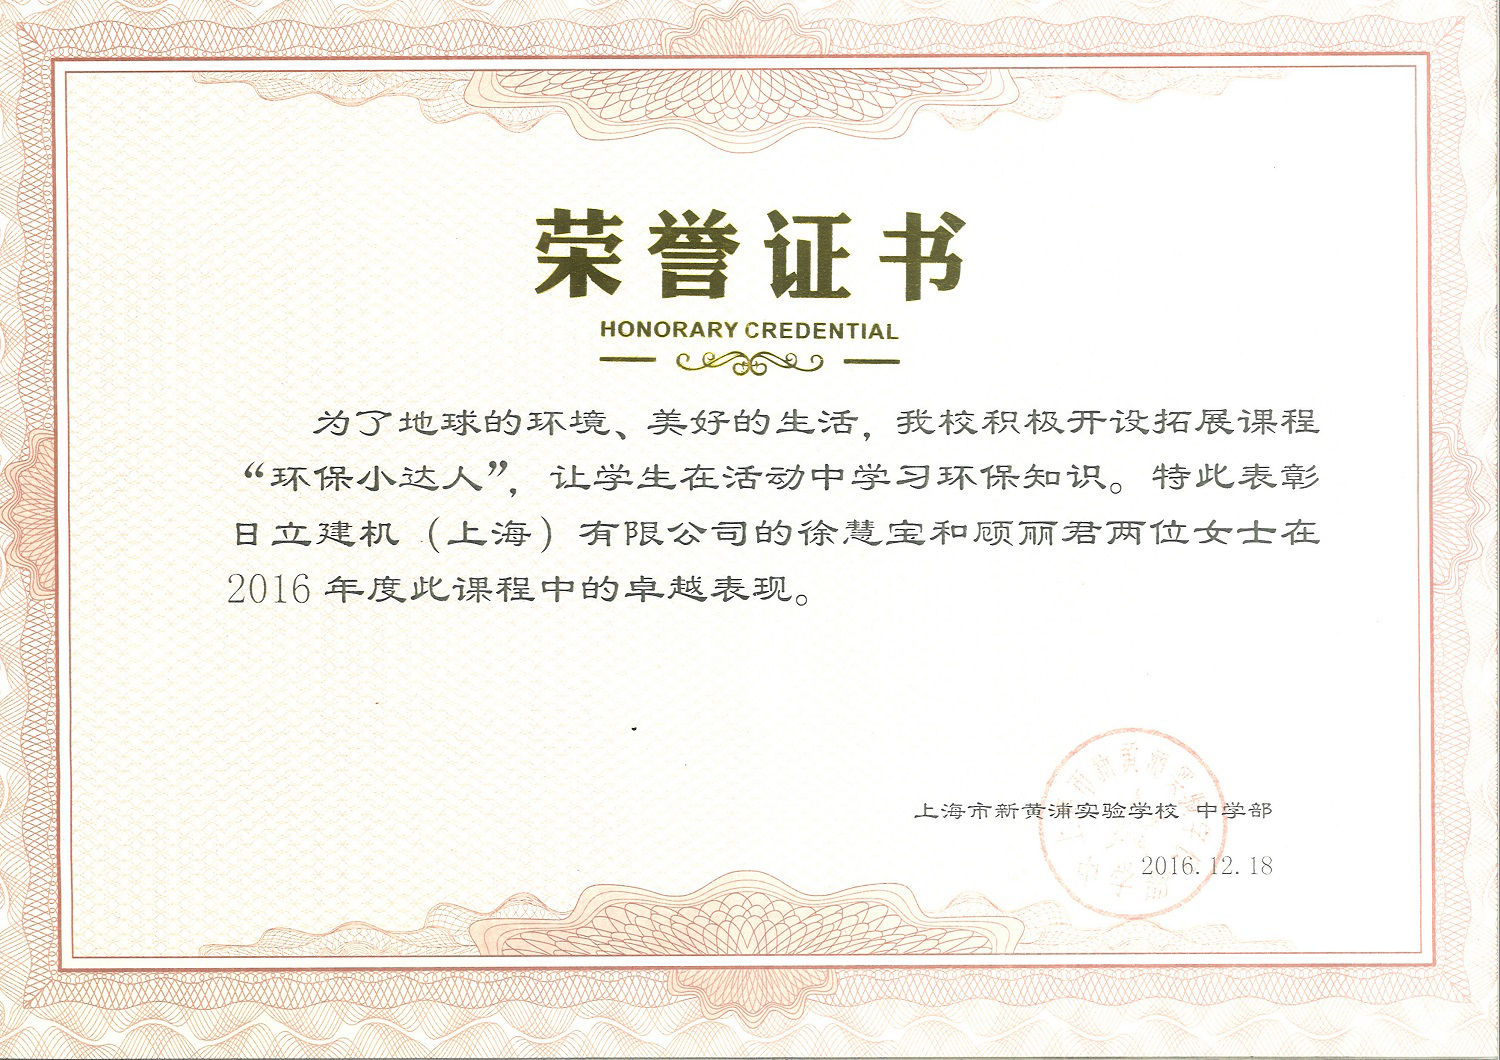 活動に対して上海市新黄埔実験学校からHCSへ送られた栄誉賞状